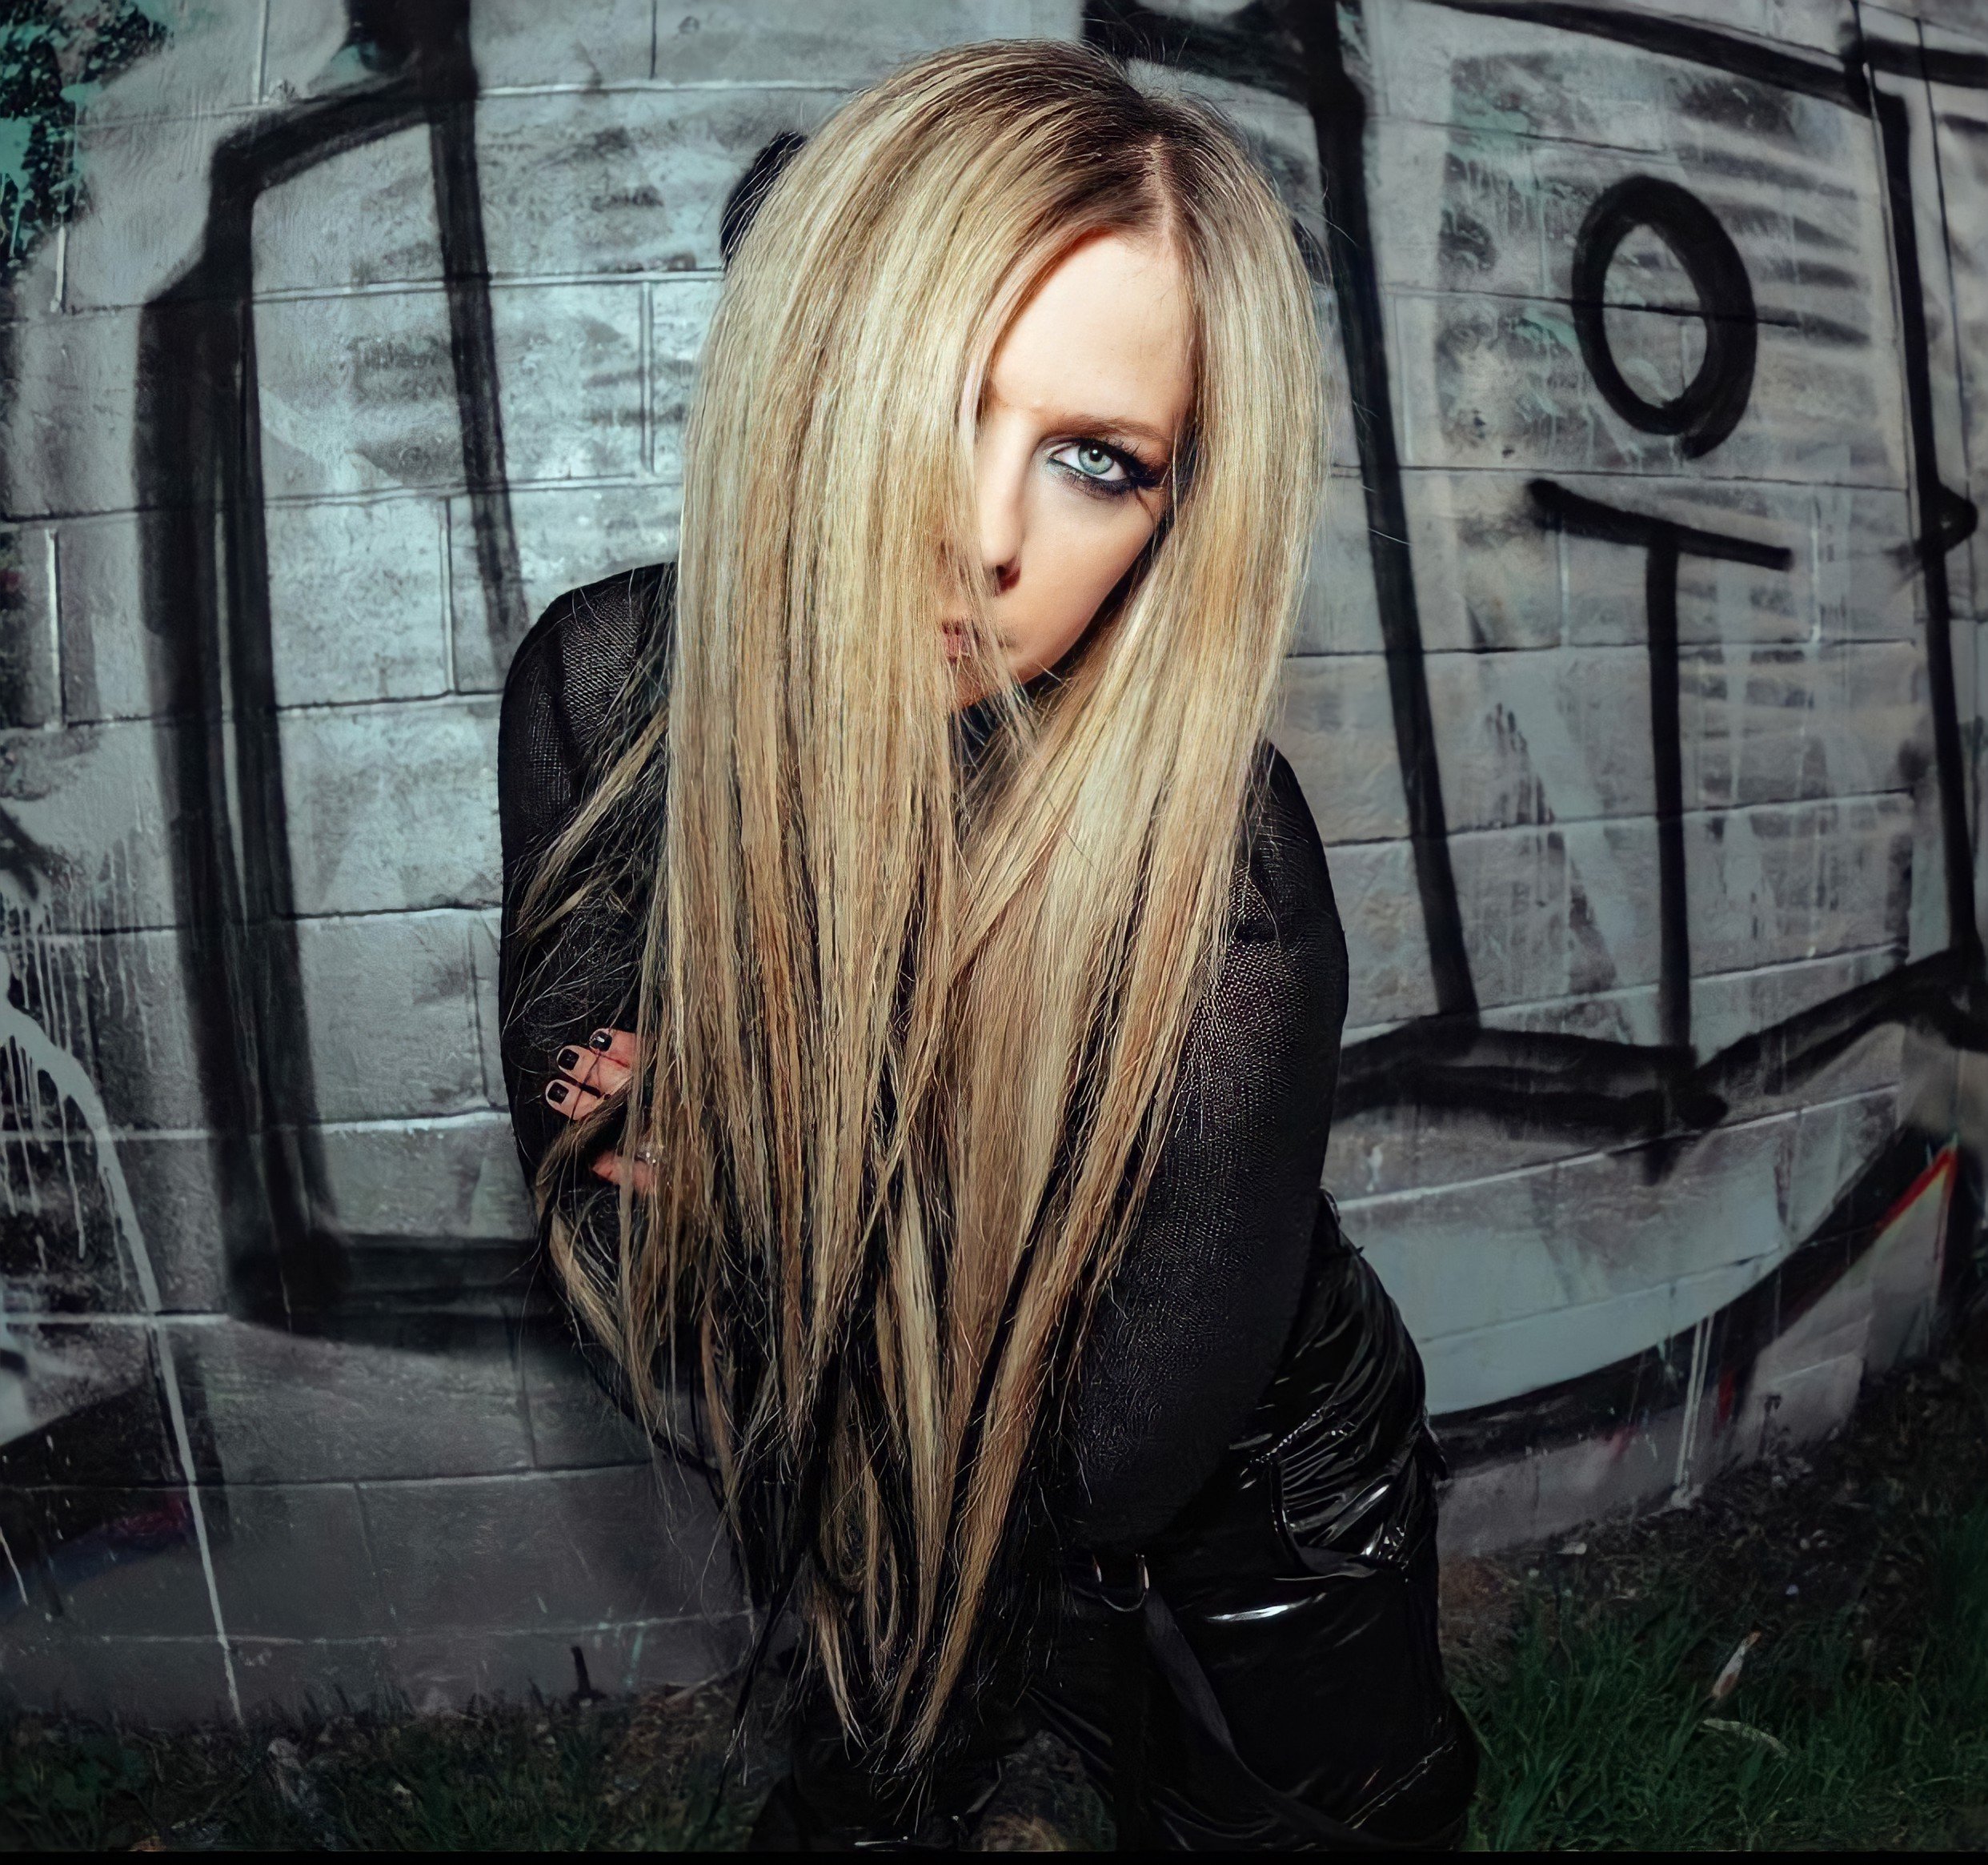 Avril Lavigne Photos Last Fm